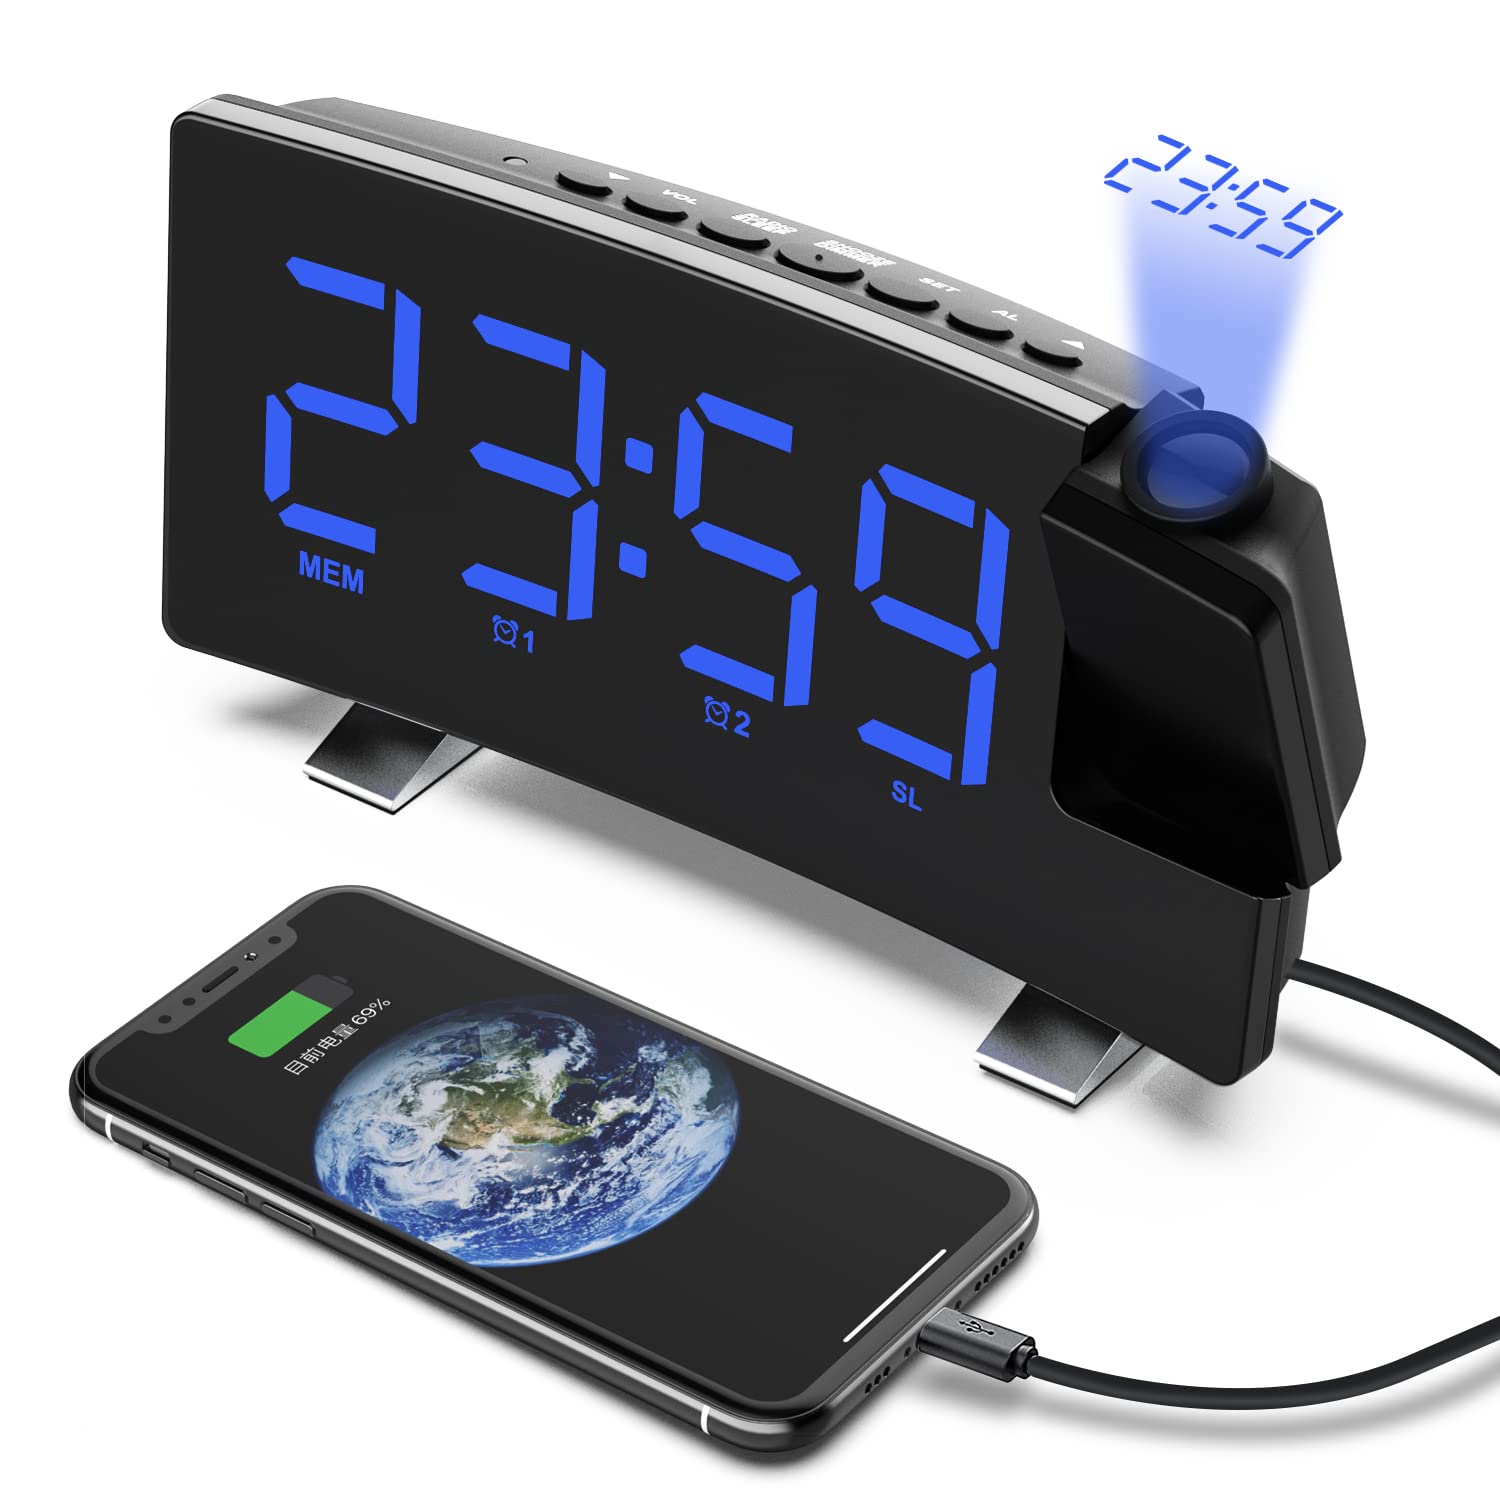 VORRINC Projektionswecker, Digital Wecker Radiowecker mit Projektion 180 °, USB-Anschluss Doppelalarme Snooze 12 / 24H, 3 Projektionshelligkeit mit Automatischem Dimmer, für Schlafzimmer Decke (Blau)